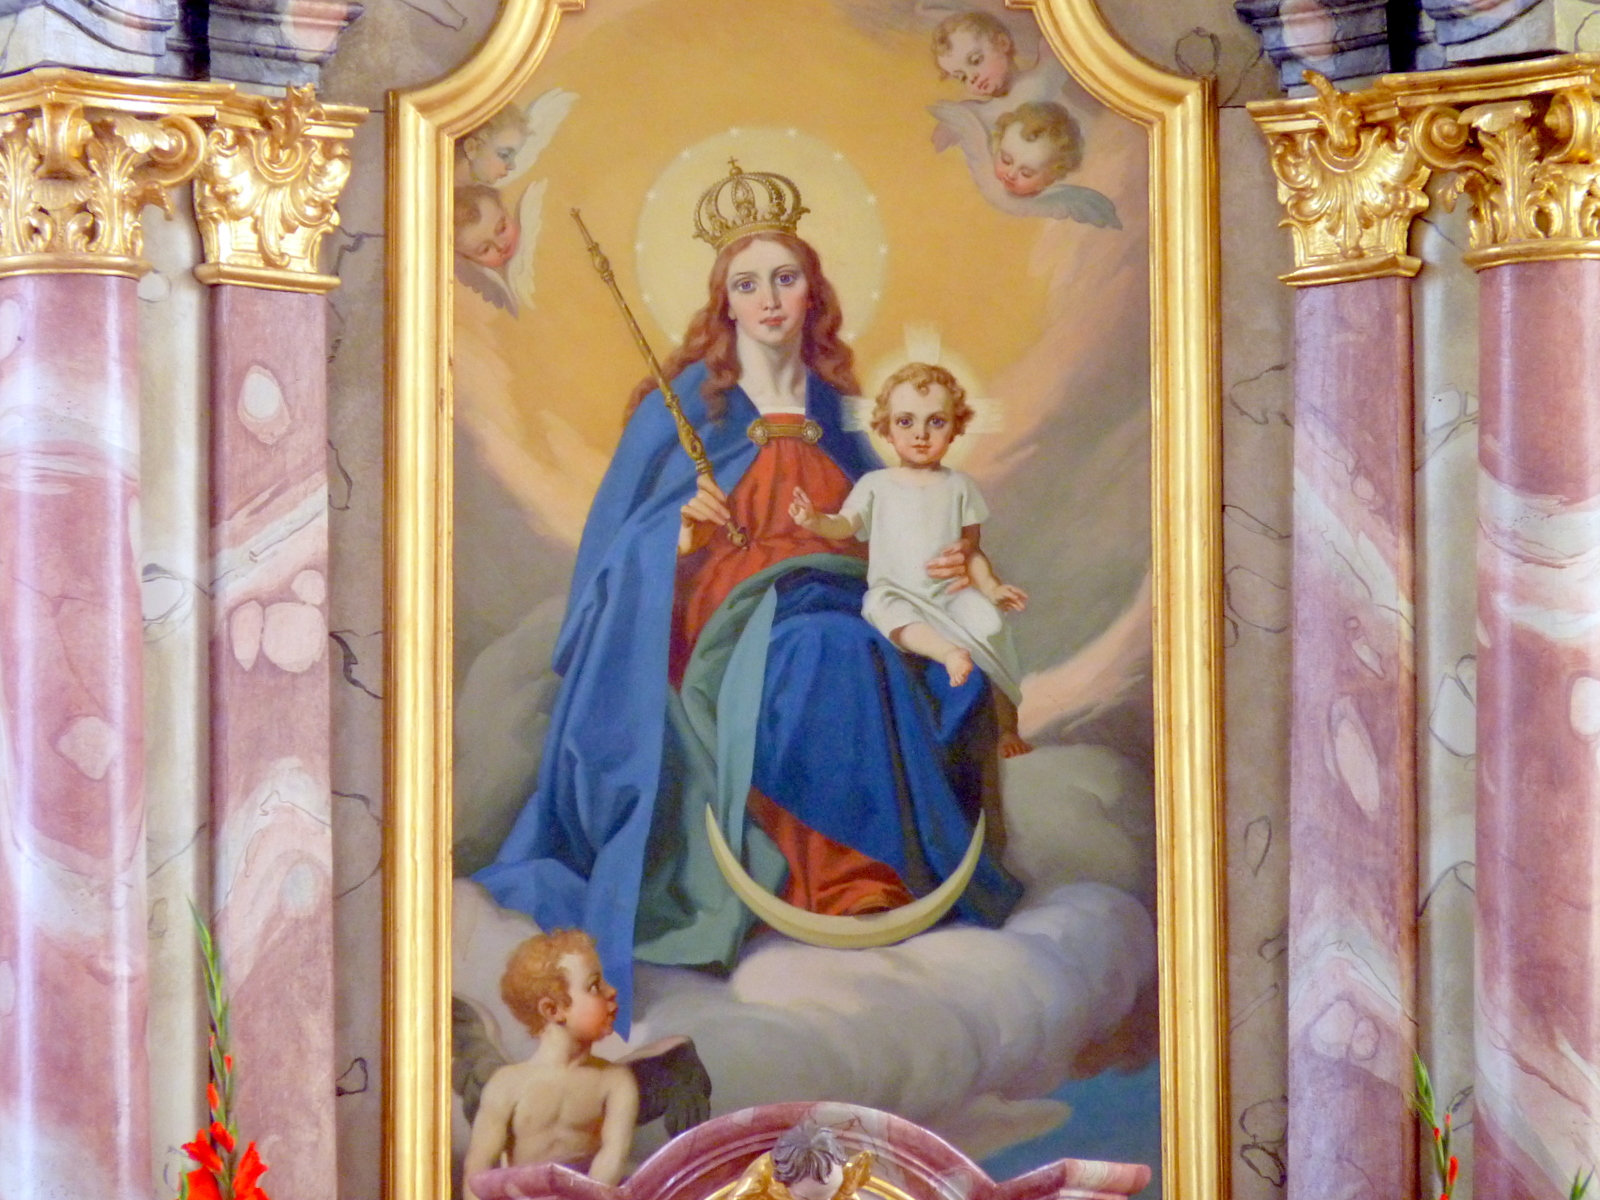 Altarbild Maria Königin mit dem Jesuskind, das die rechte Hand zum Segensgestus erhebt.